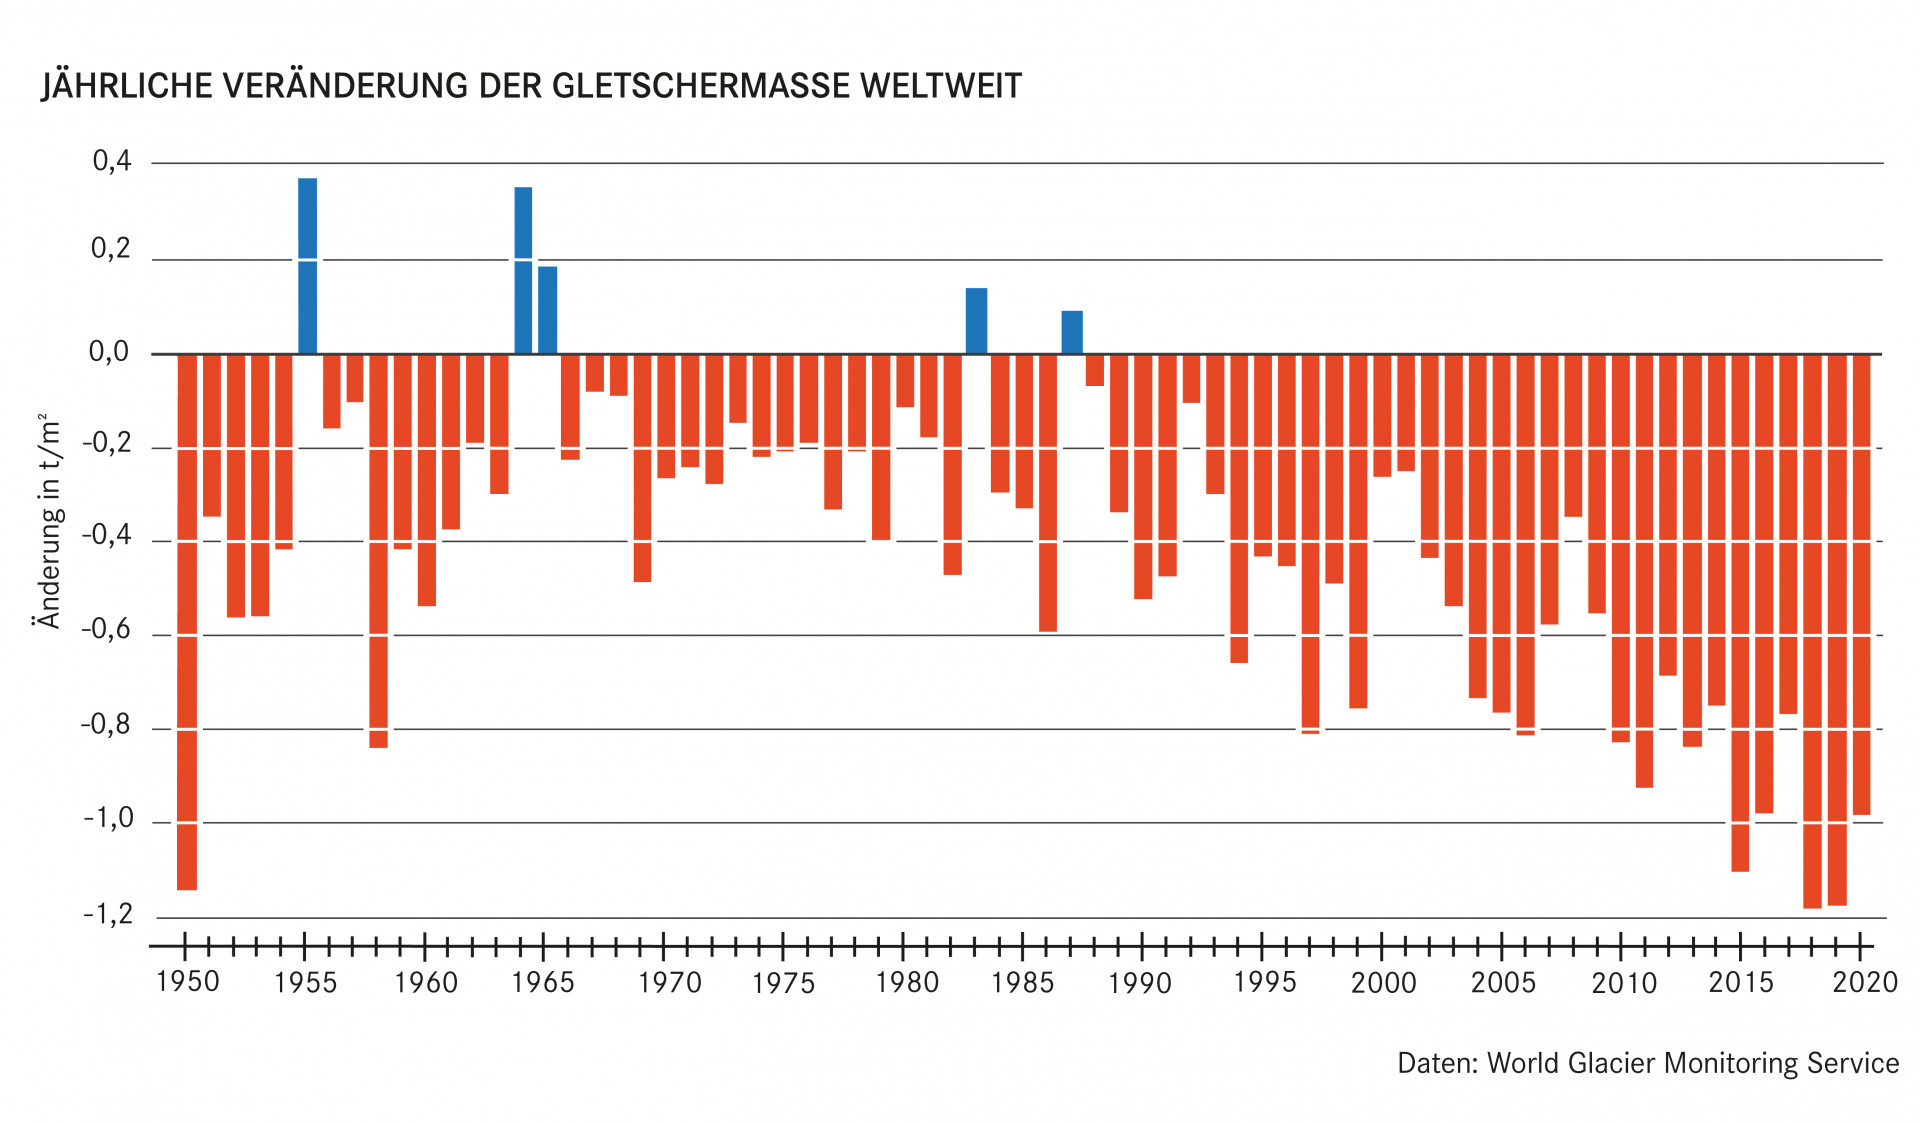 Balkendiagramm zeigt, dass seit 1950 die Gletschermasse weltweit abgenommen hat, bis auf in den Jahren 1955, 1964, 1965, 1983 und 1987. 2020 haben die Gletscher 1 Tonne Masse verloren